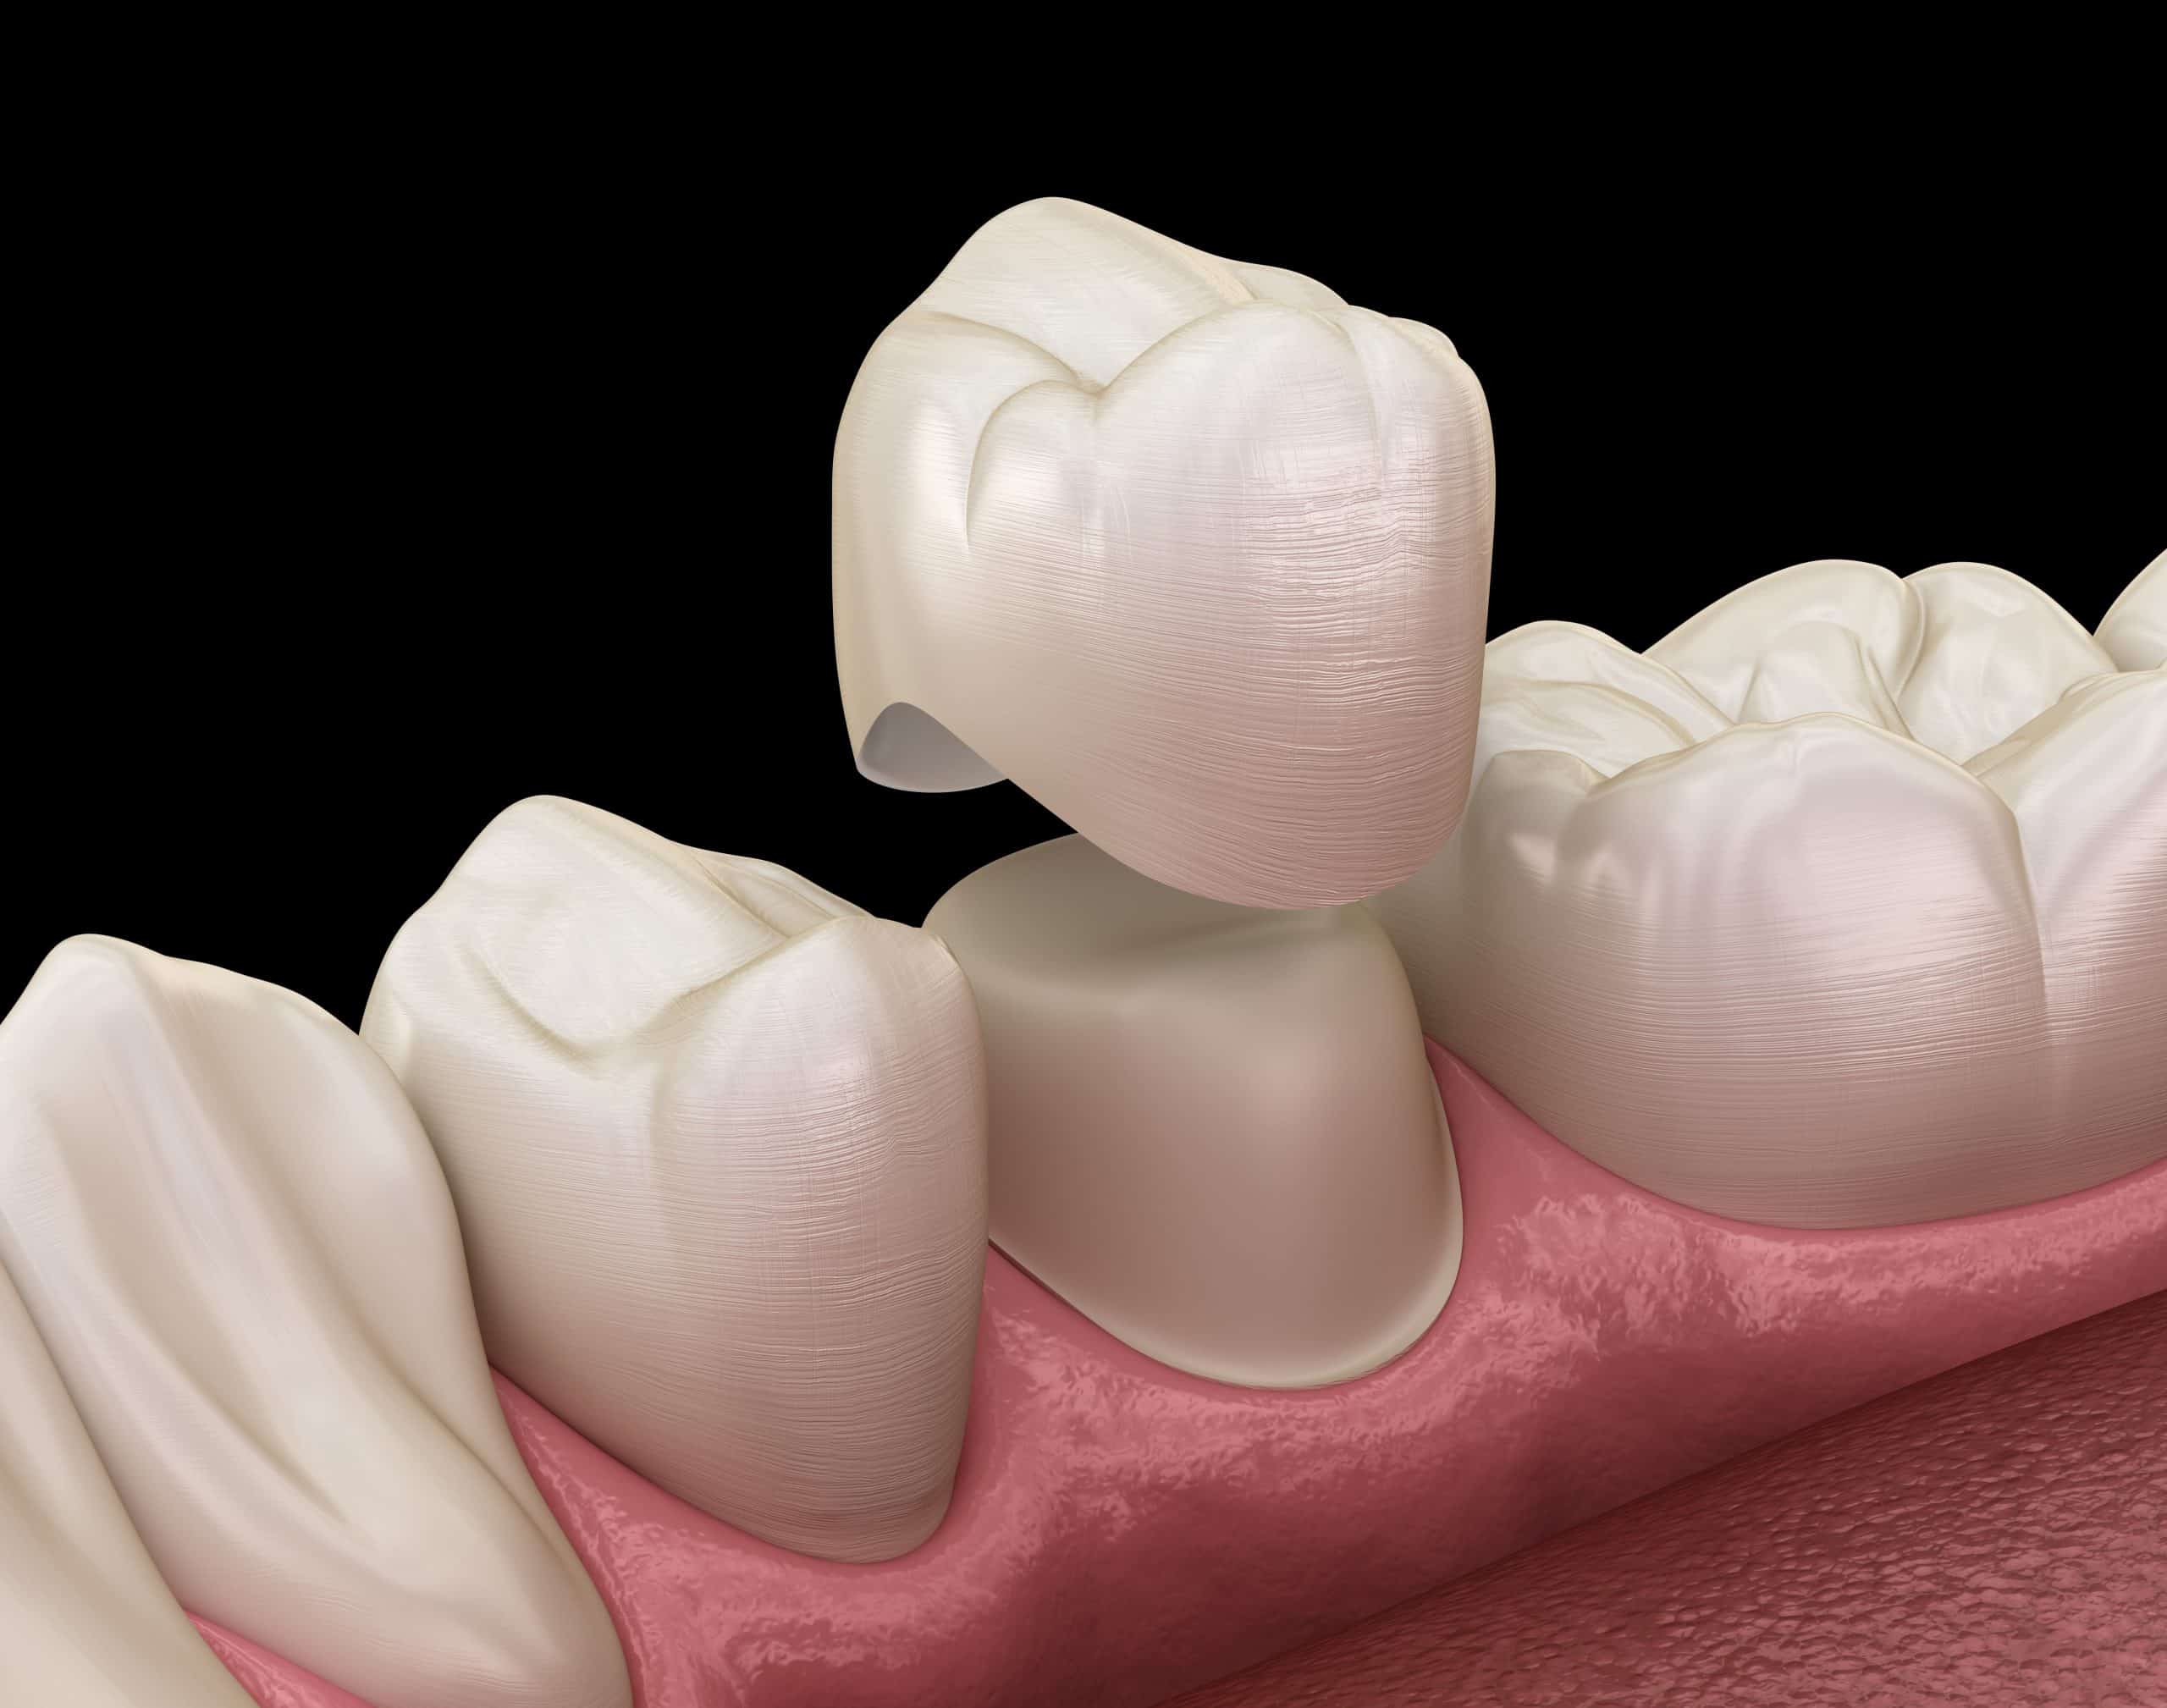 Dental corner - Une couronne provisoire au résine